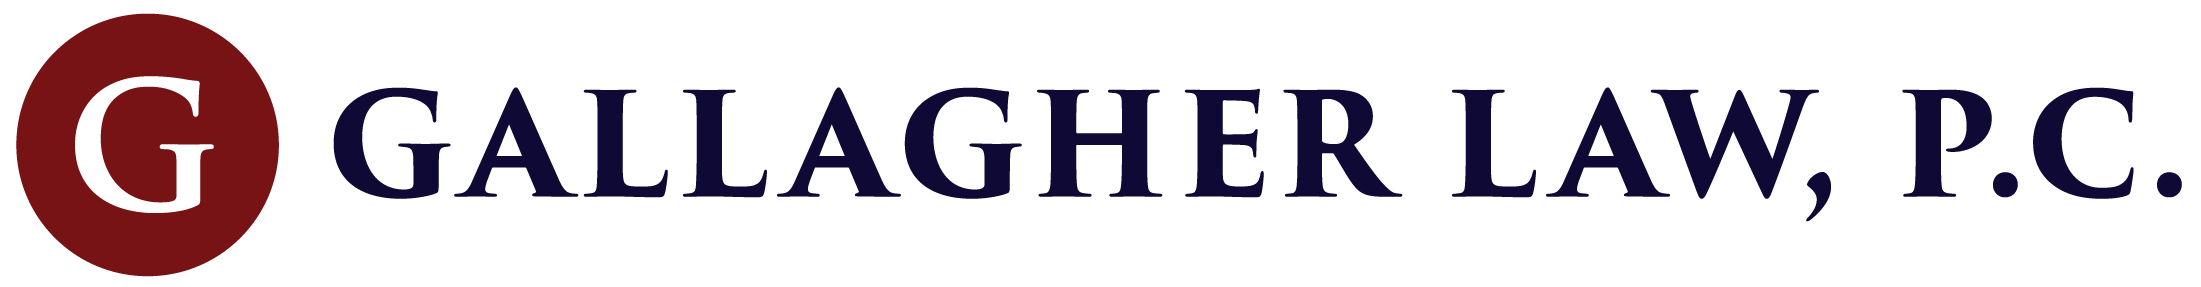 gallagher law logo